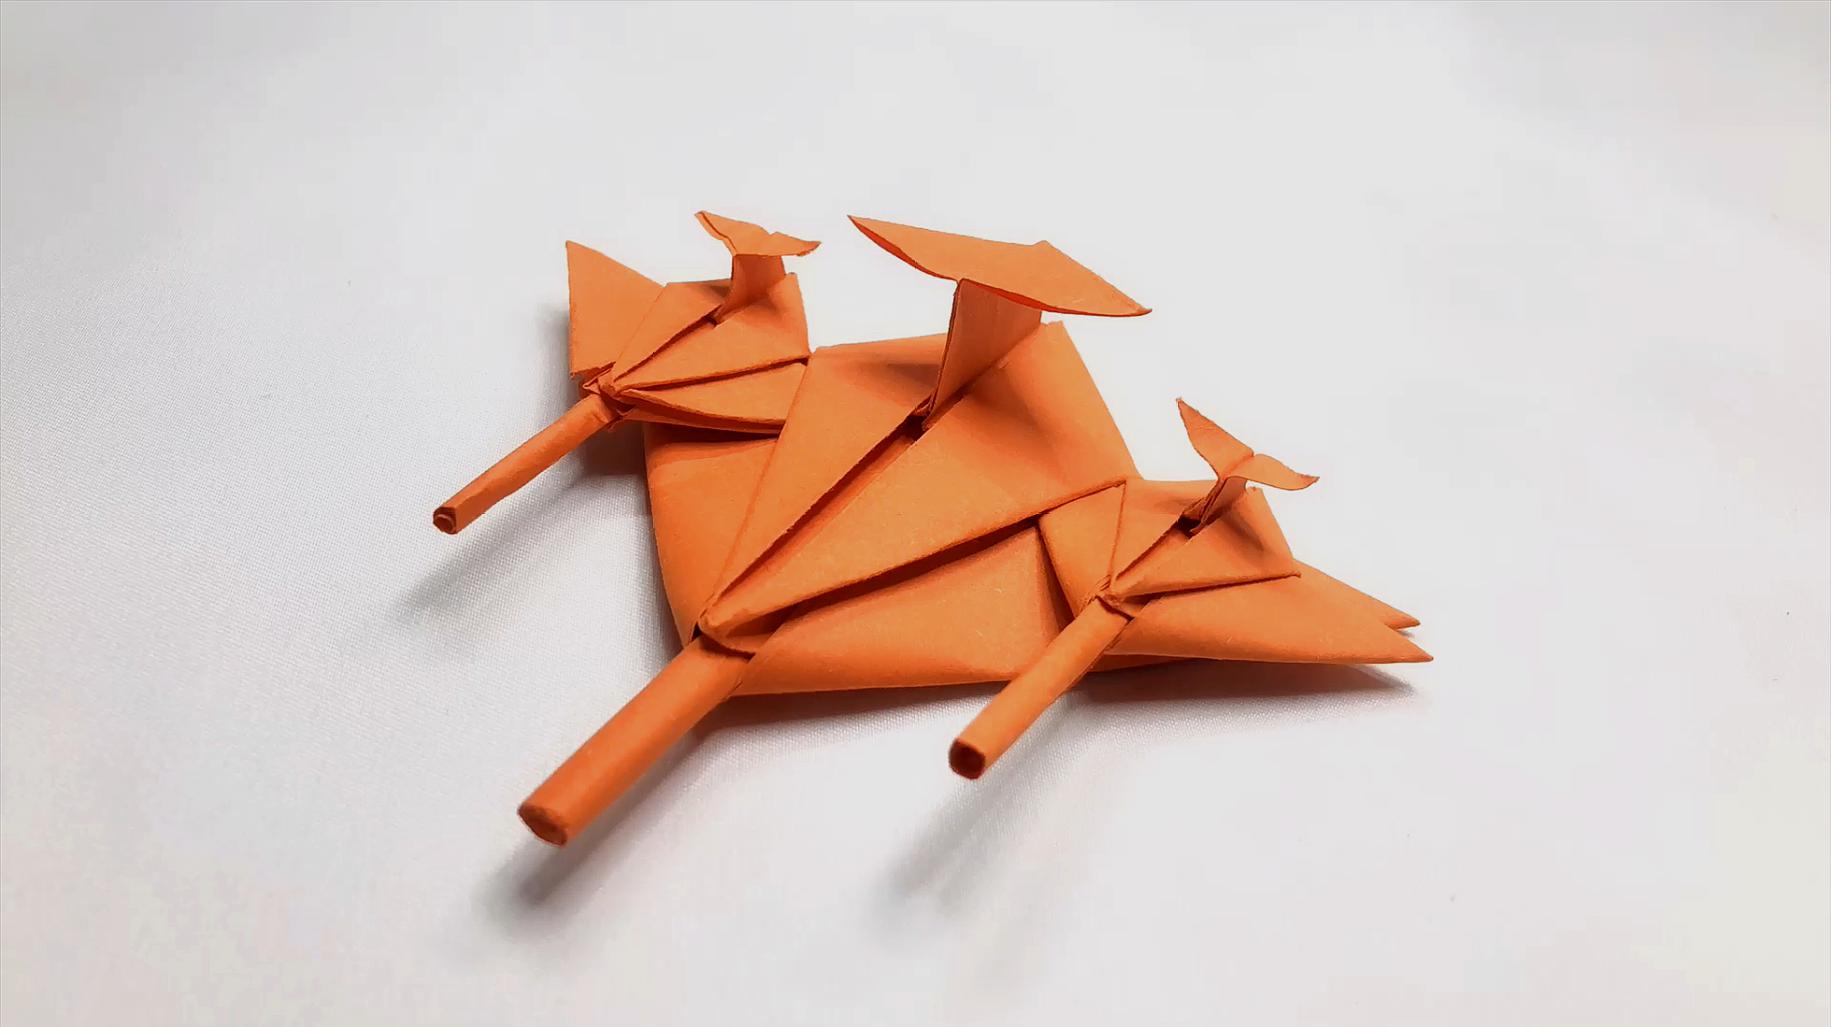 小小桃的玩具计划:《折纸教程》合集(二)